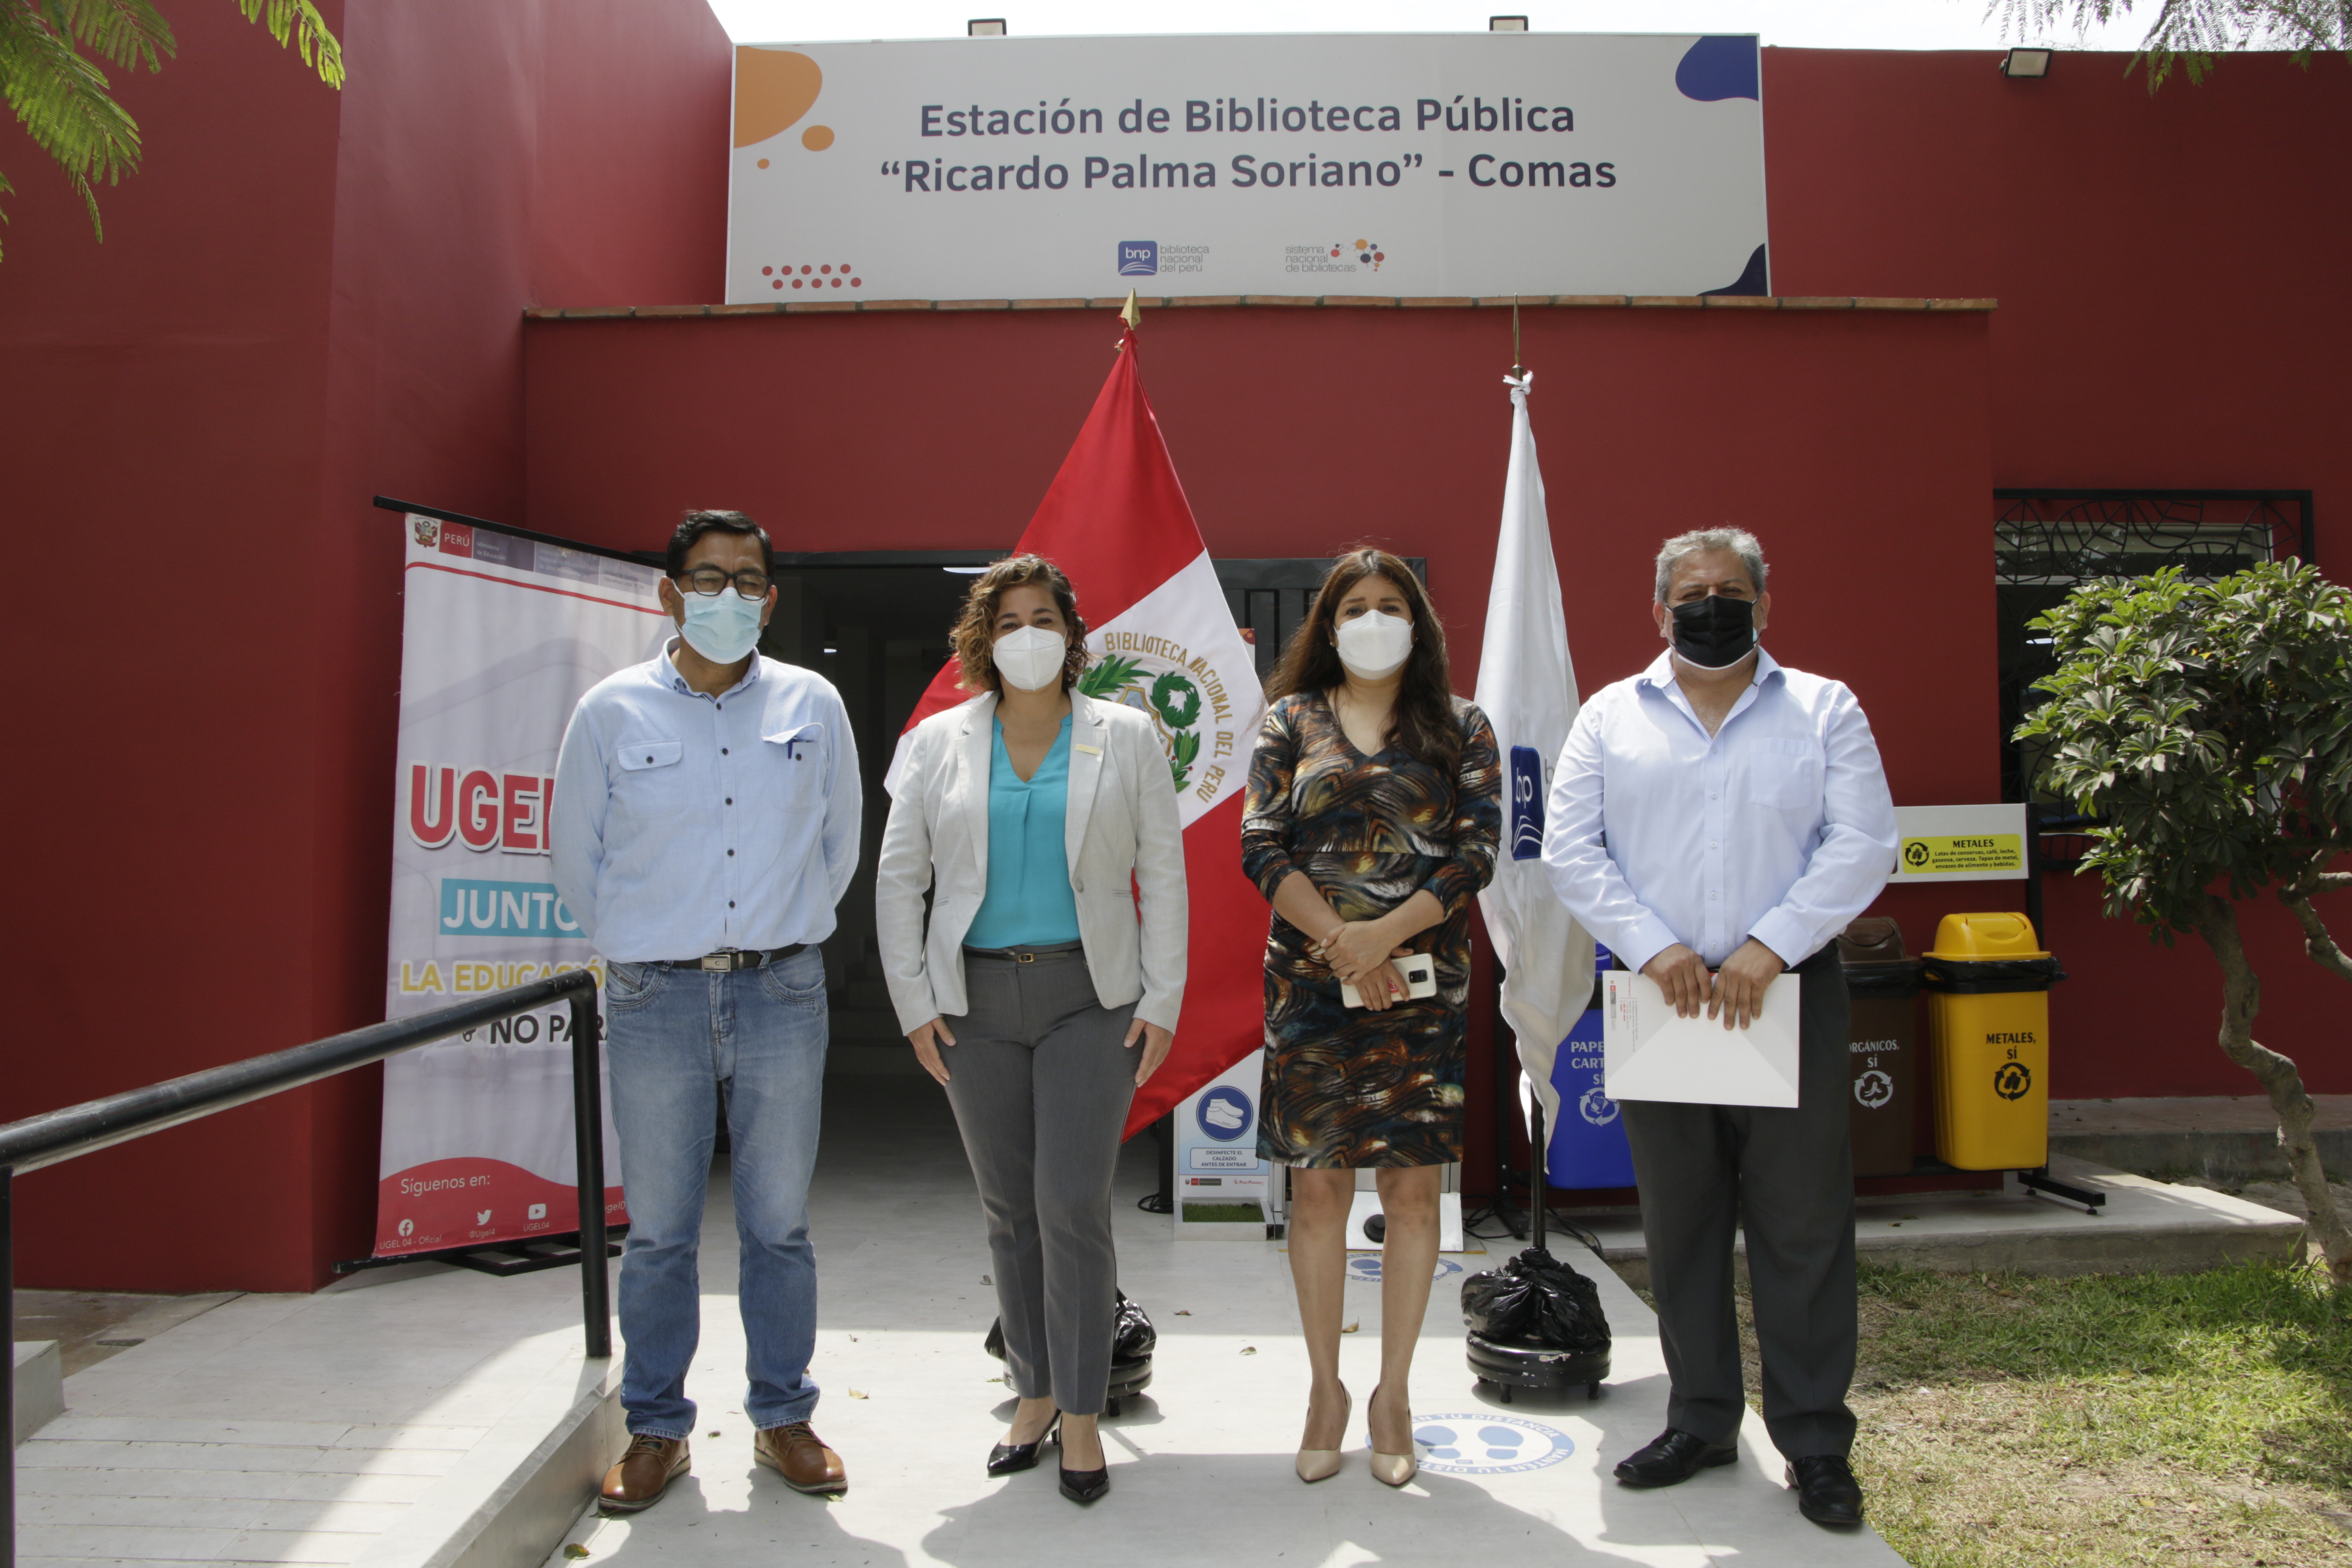 Biblioteca Nacional del Perú lanza la campaña “Retorno a clases